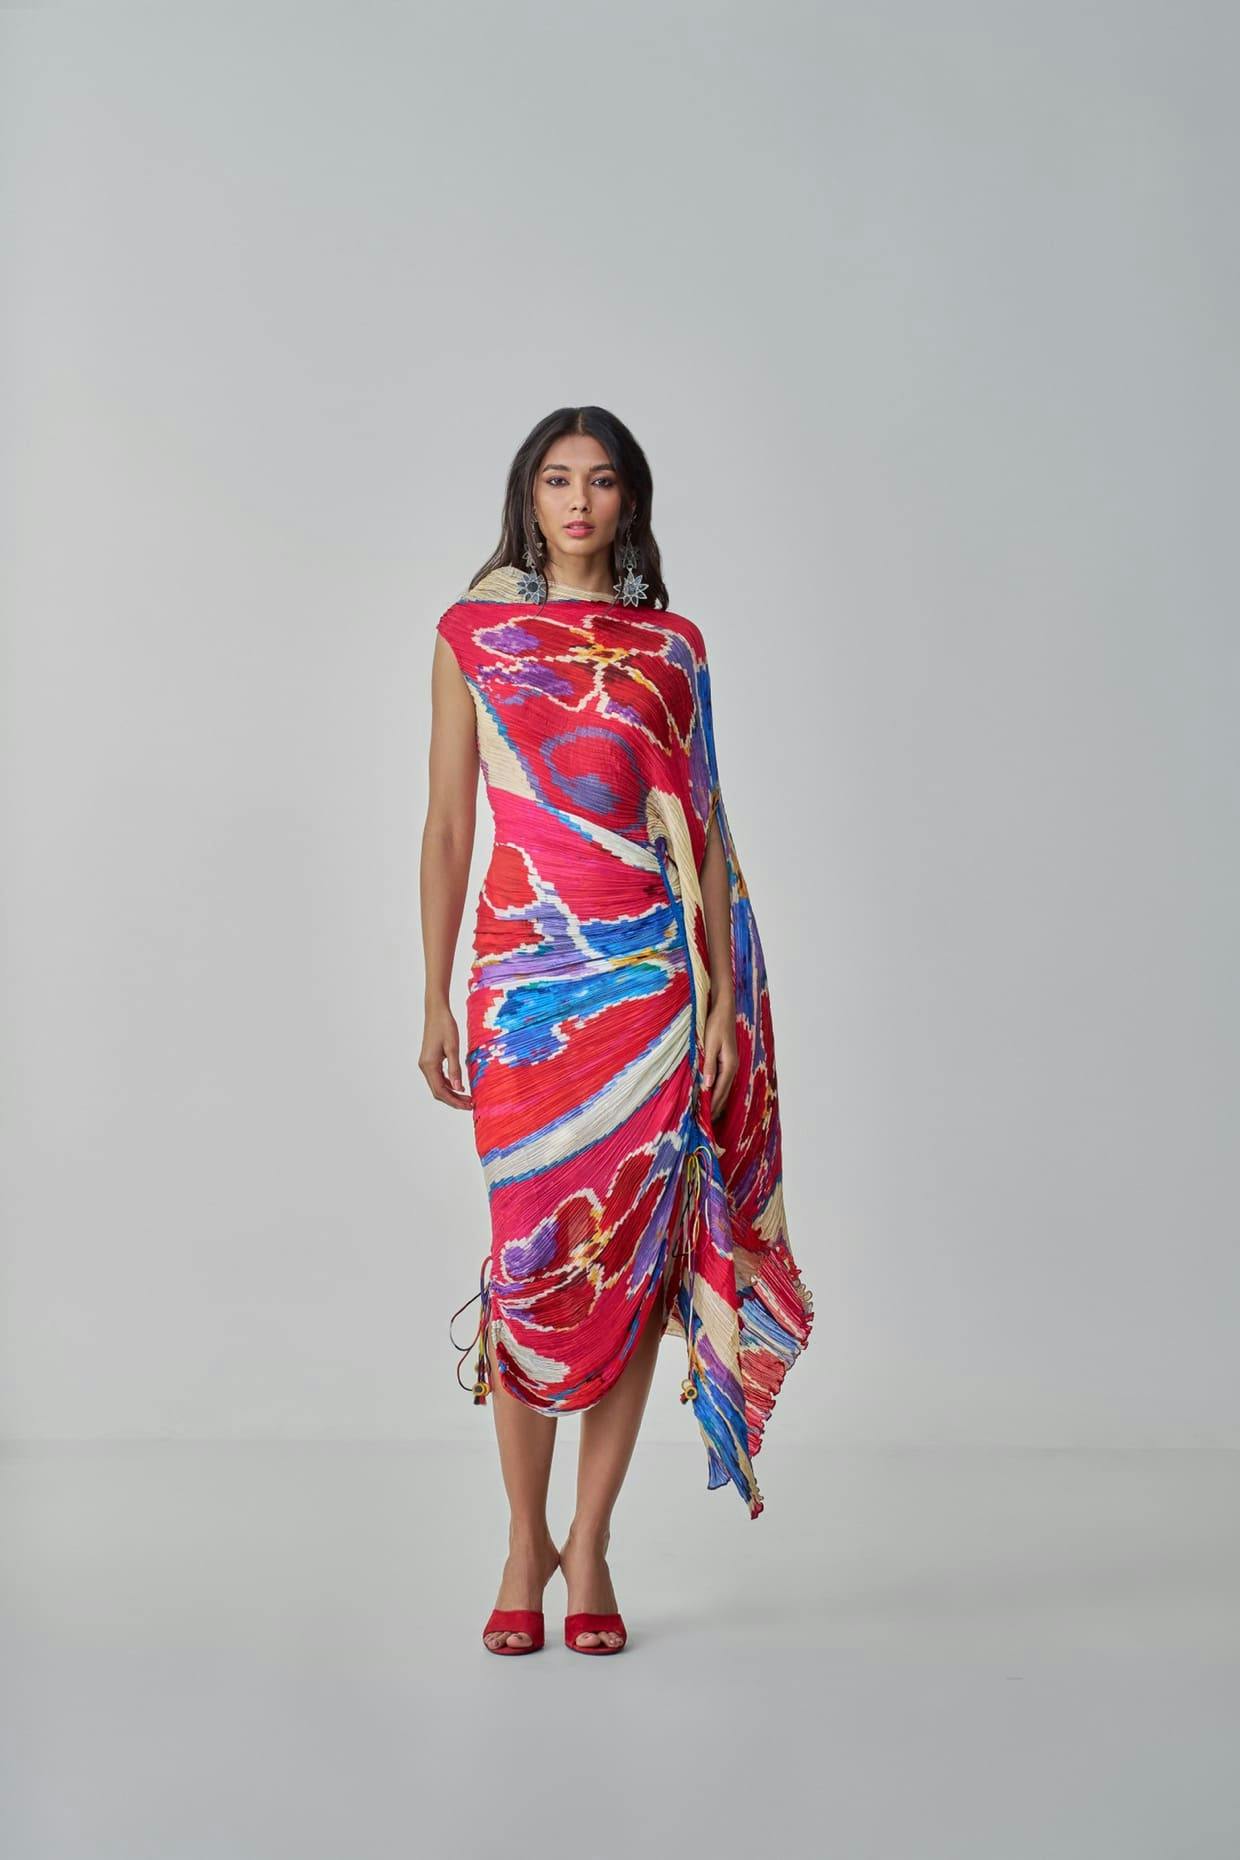 KATHY DRESS, a product by Saaksha & Kinni 